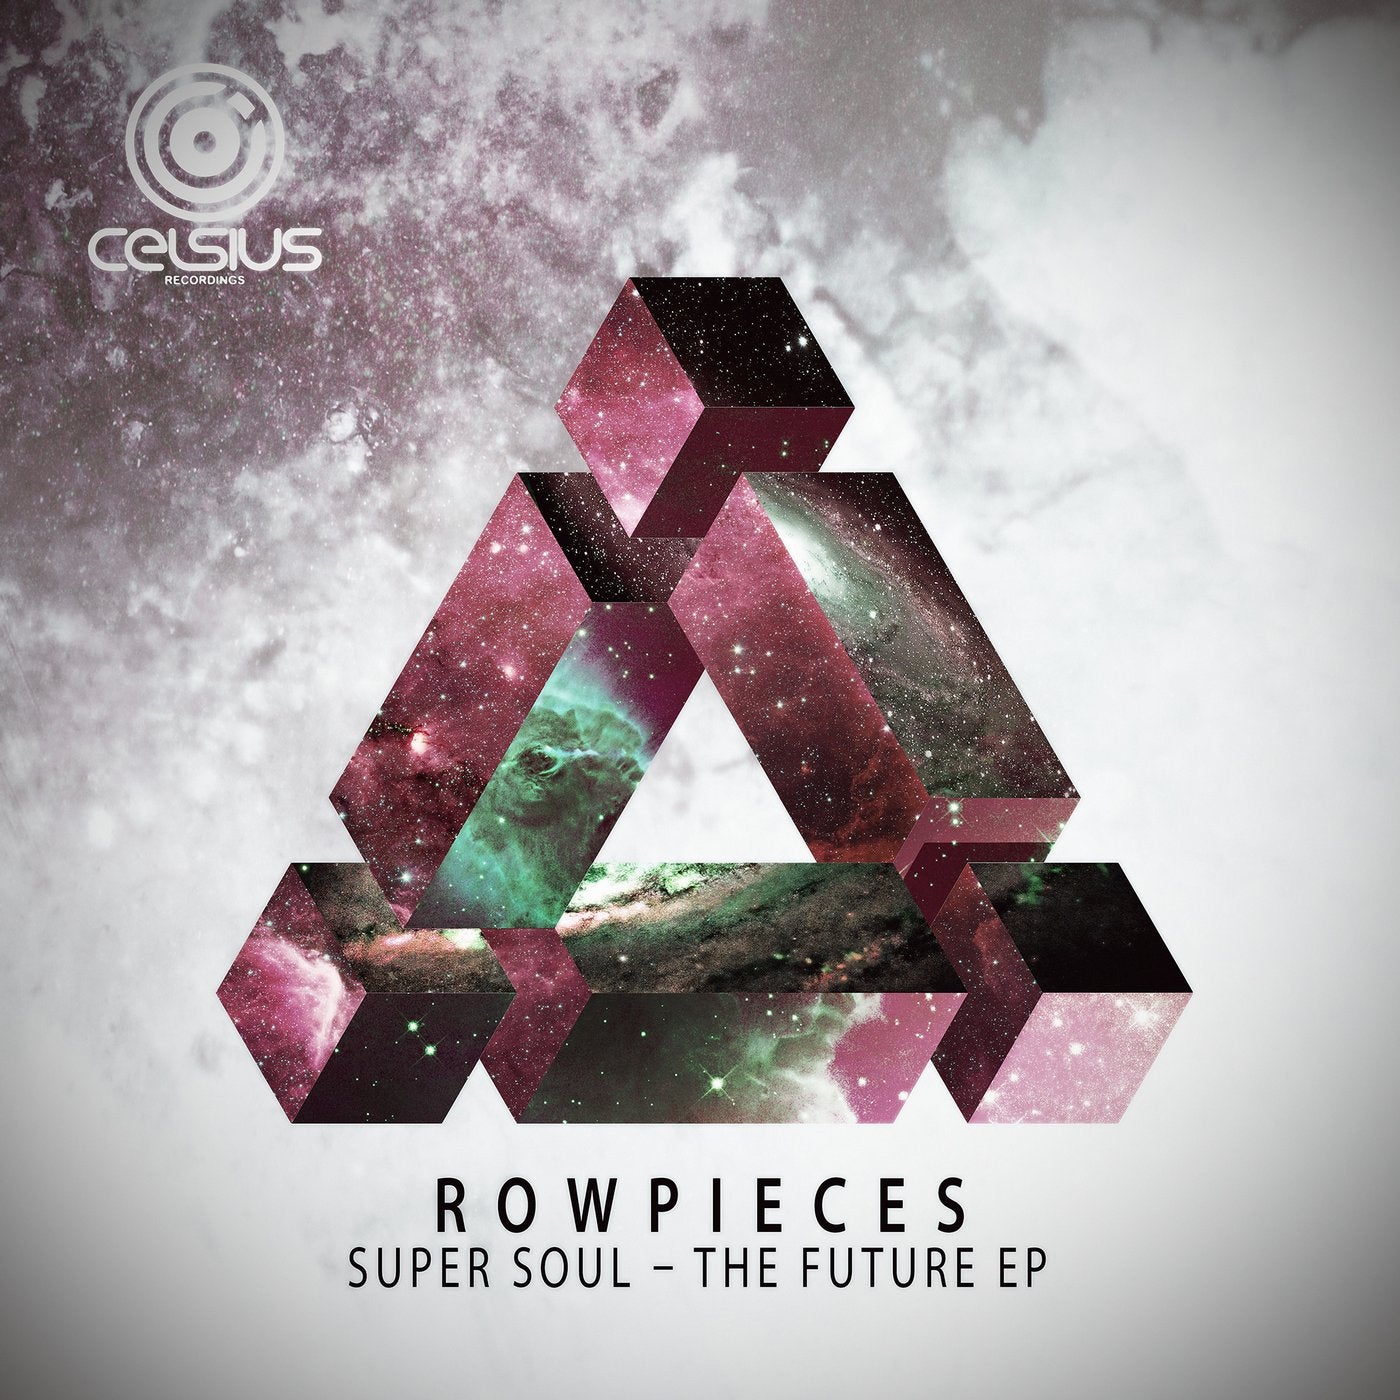 Super Soul - The Future EP